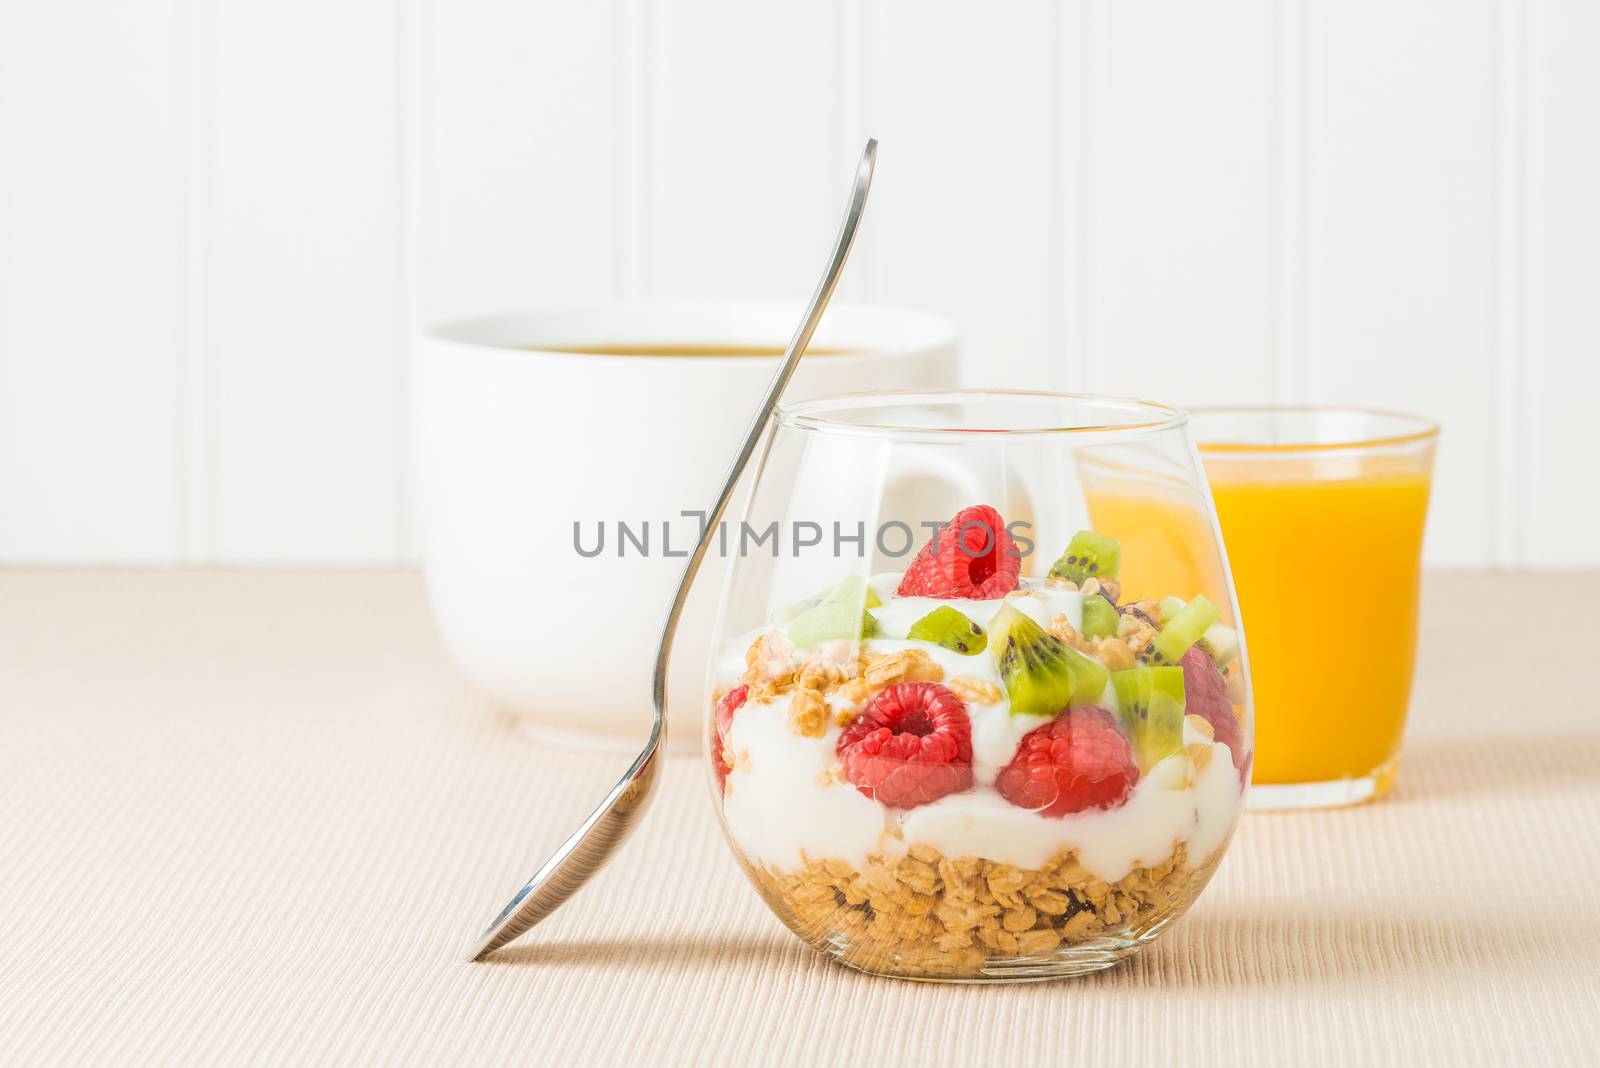 Breakfast Fruit Parfait by billberryphotography